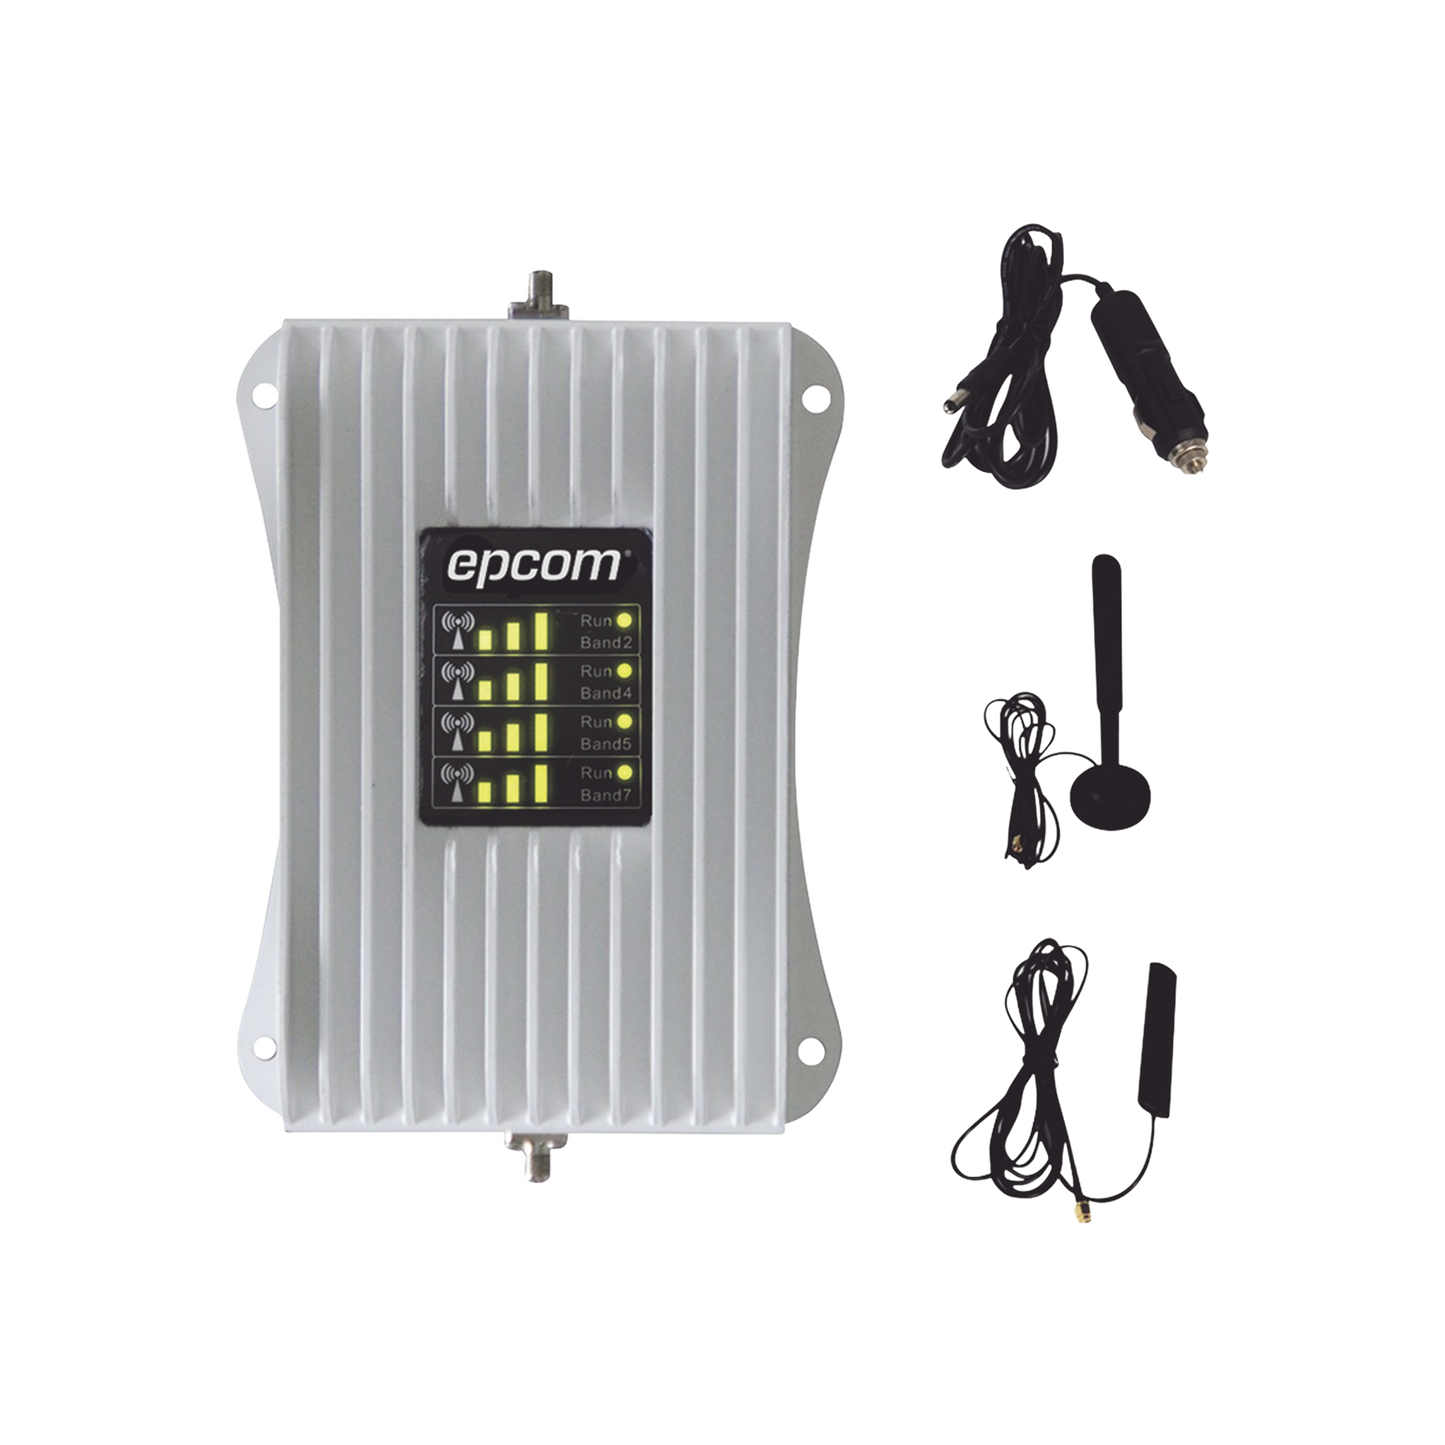 KIT Amplificador de Señal Celular Para Vehículo/ Soporta y Mejora la Señal Celular 5G, 4G LTE/ Múltiples Operadores, usuarios y dispositivos/ Ideal para Vehículo tipo Camioneta, Pick up o Sedán.